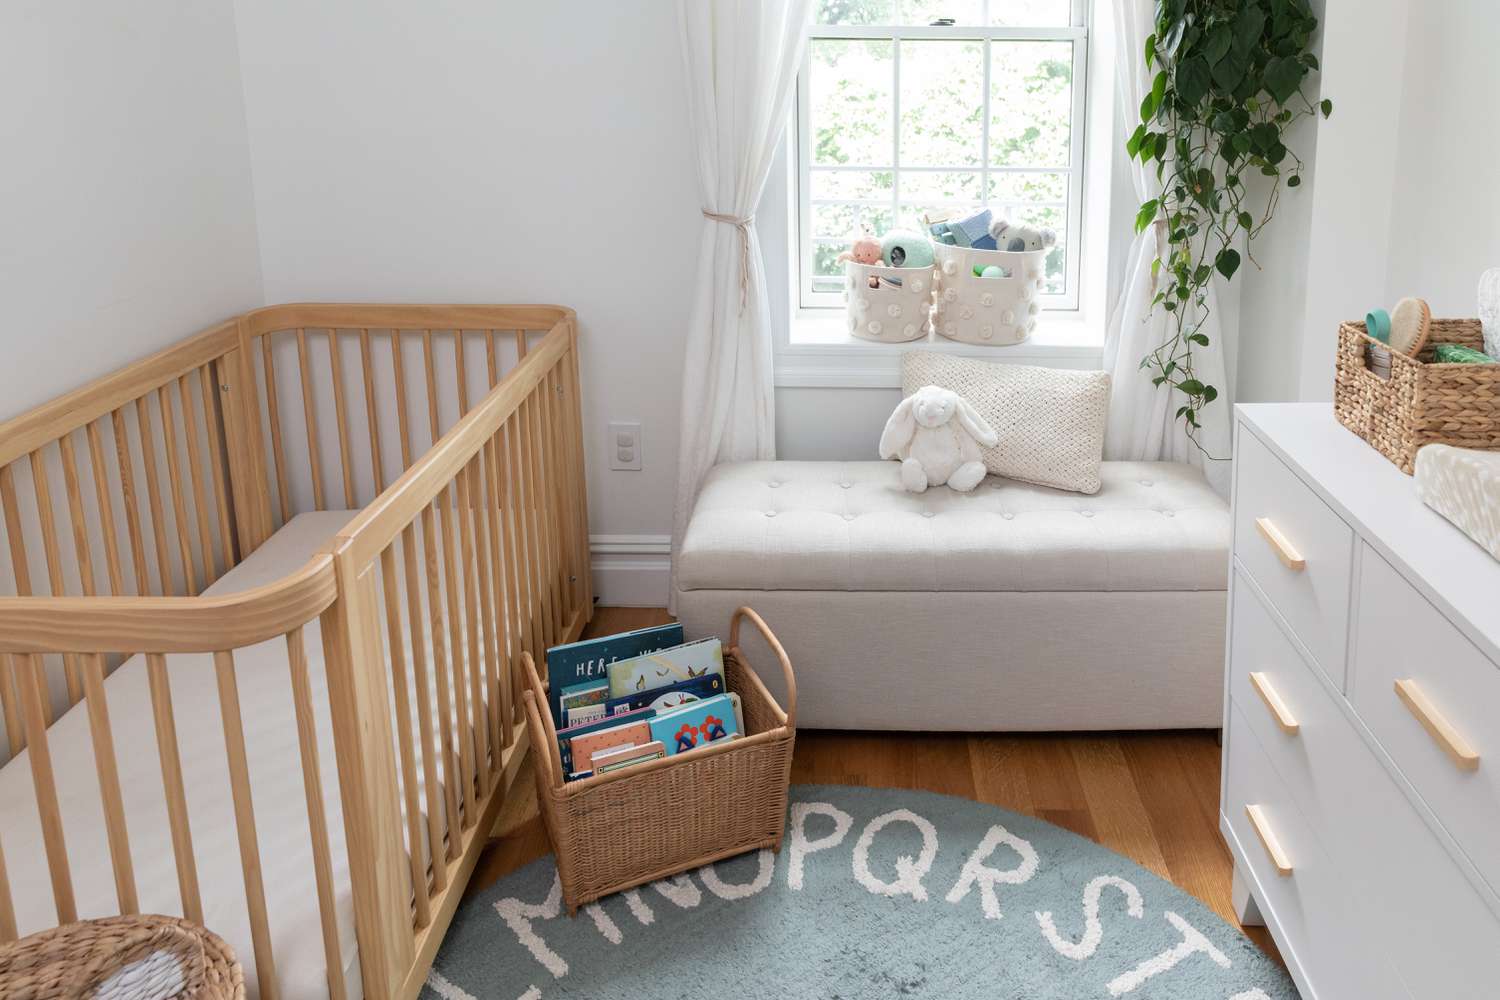 Como projetar um lindo quarto de bebê com um orçamento limitado